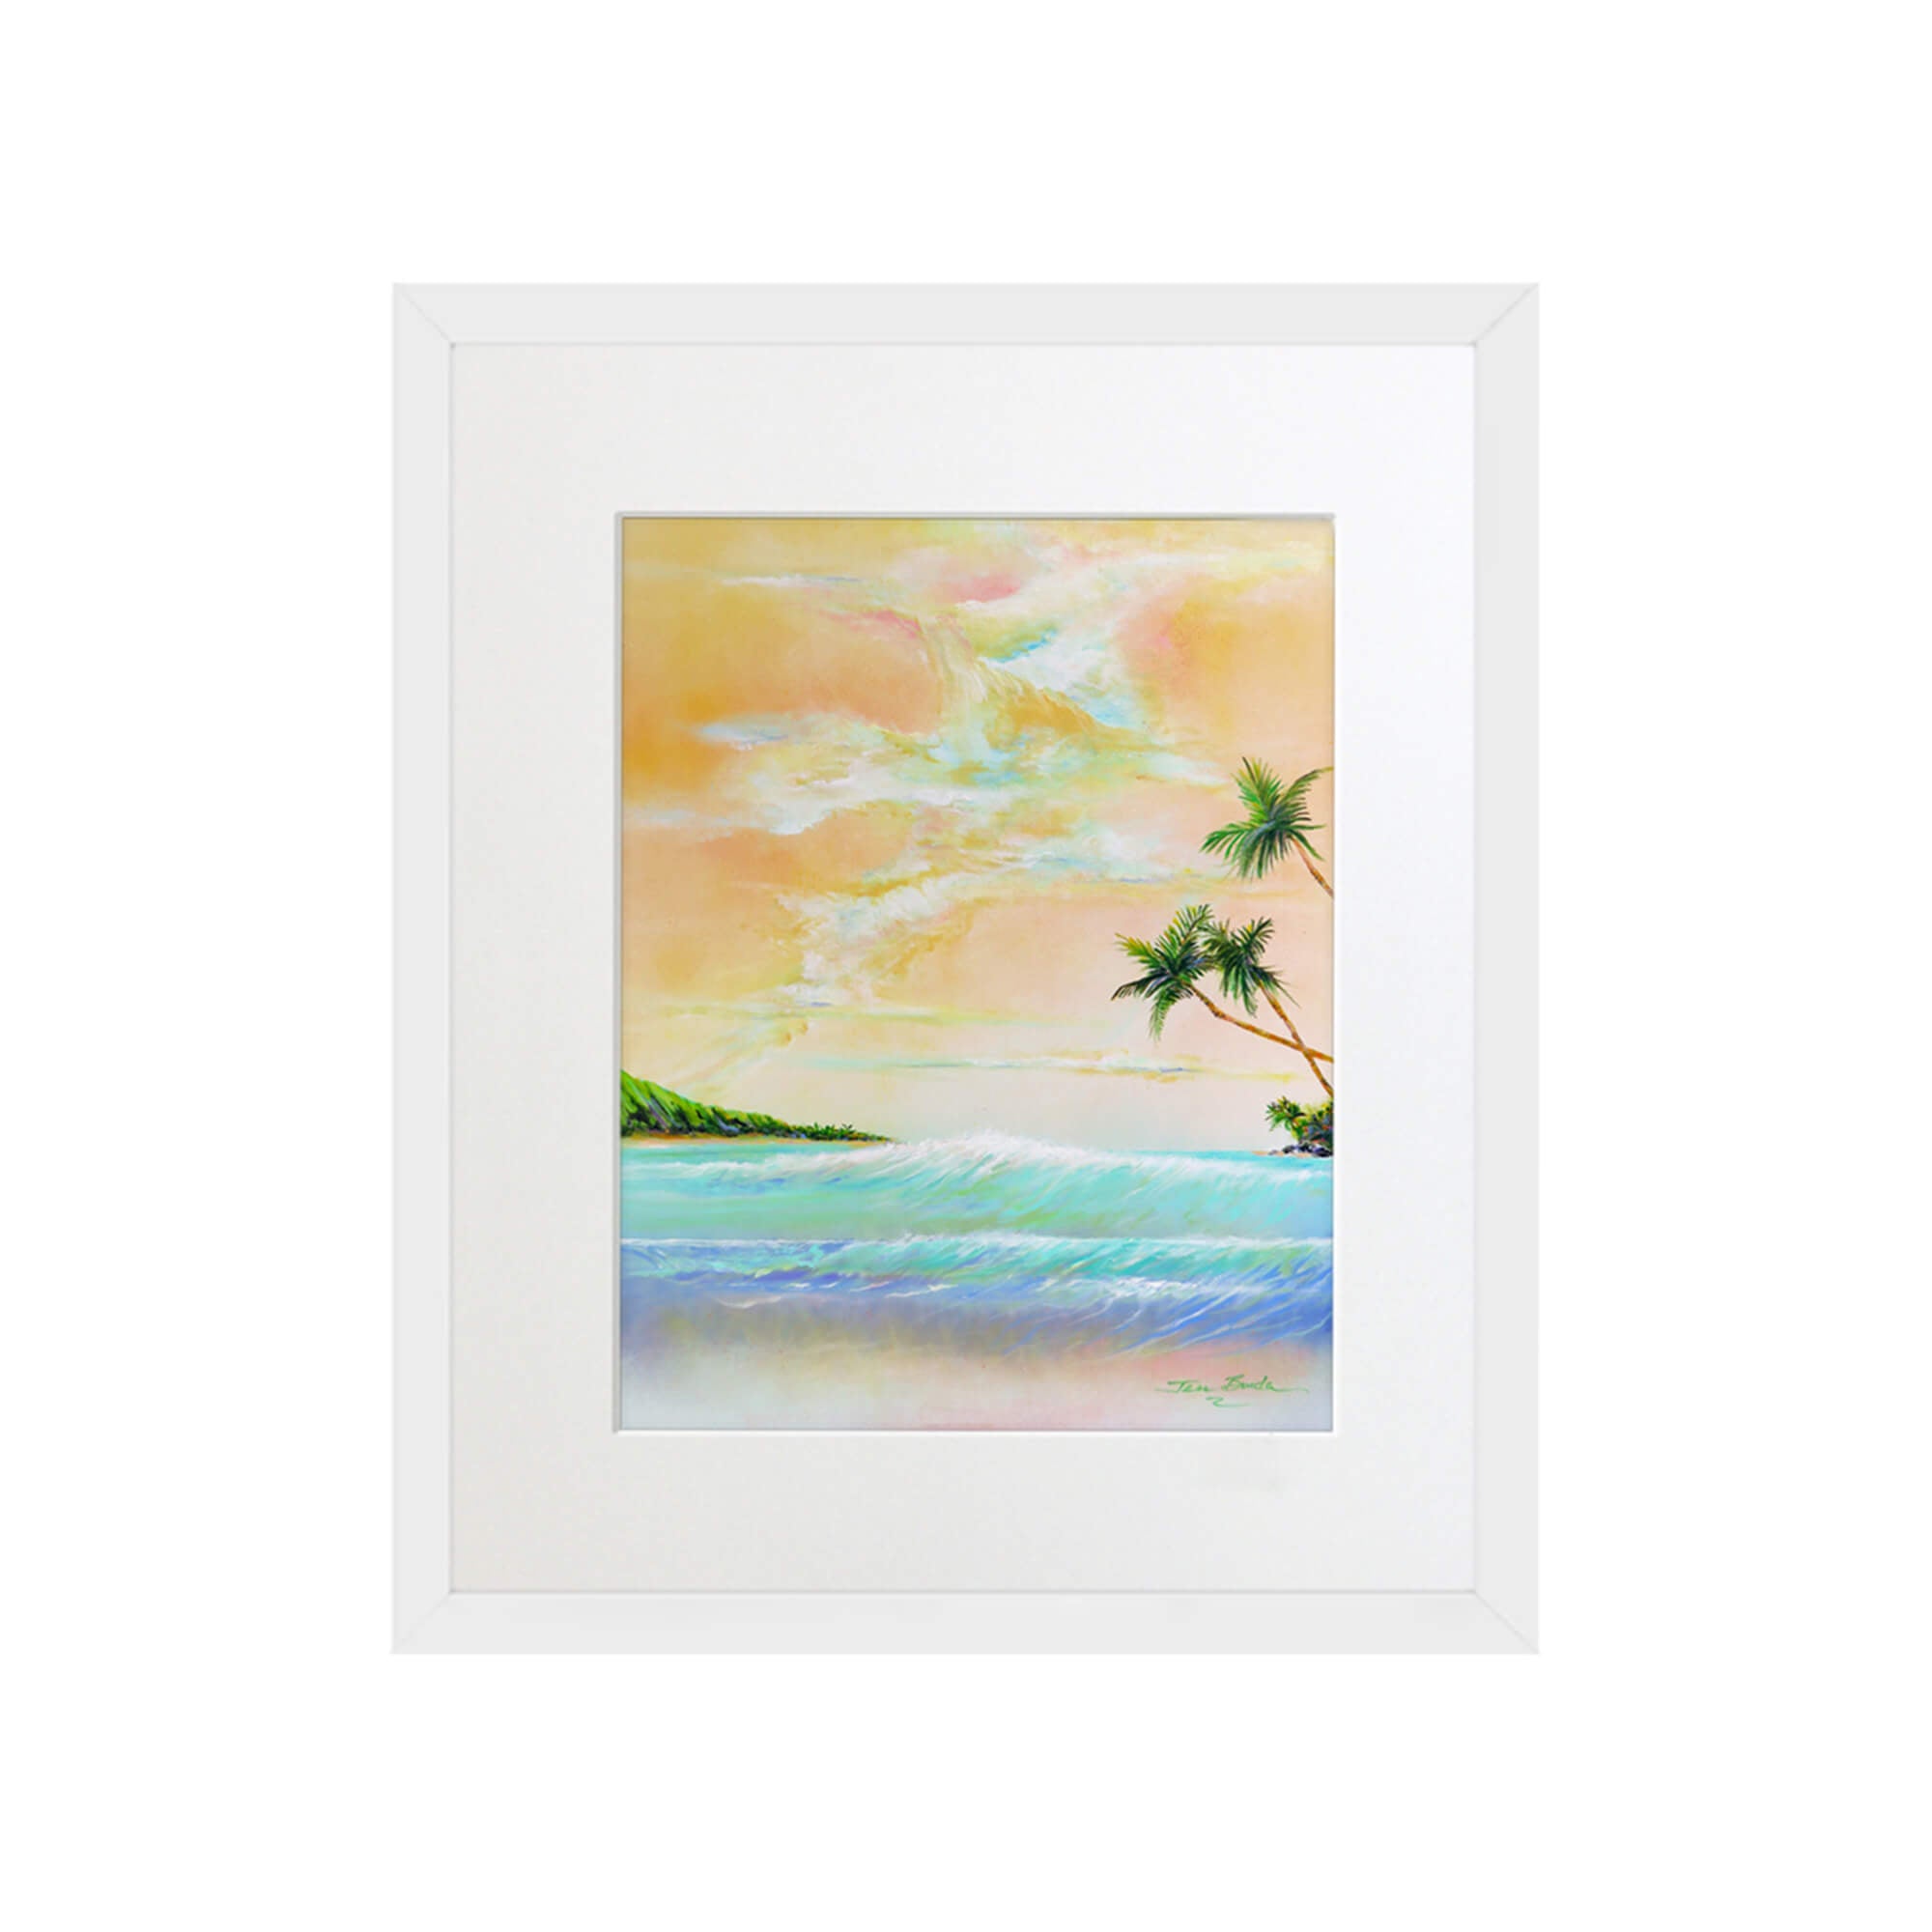 A seascape with orange-hued sky by Hawaii artist Jess Burda